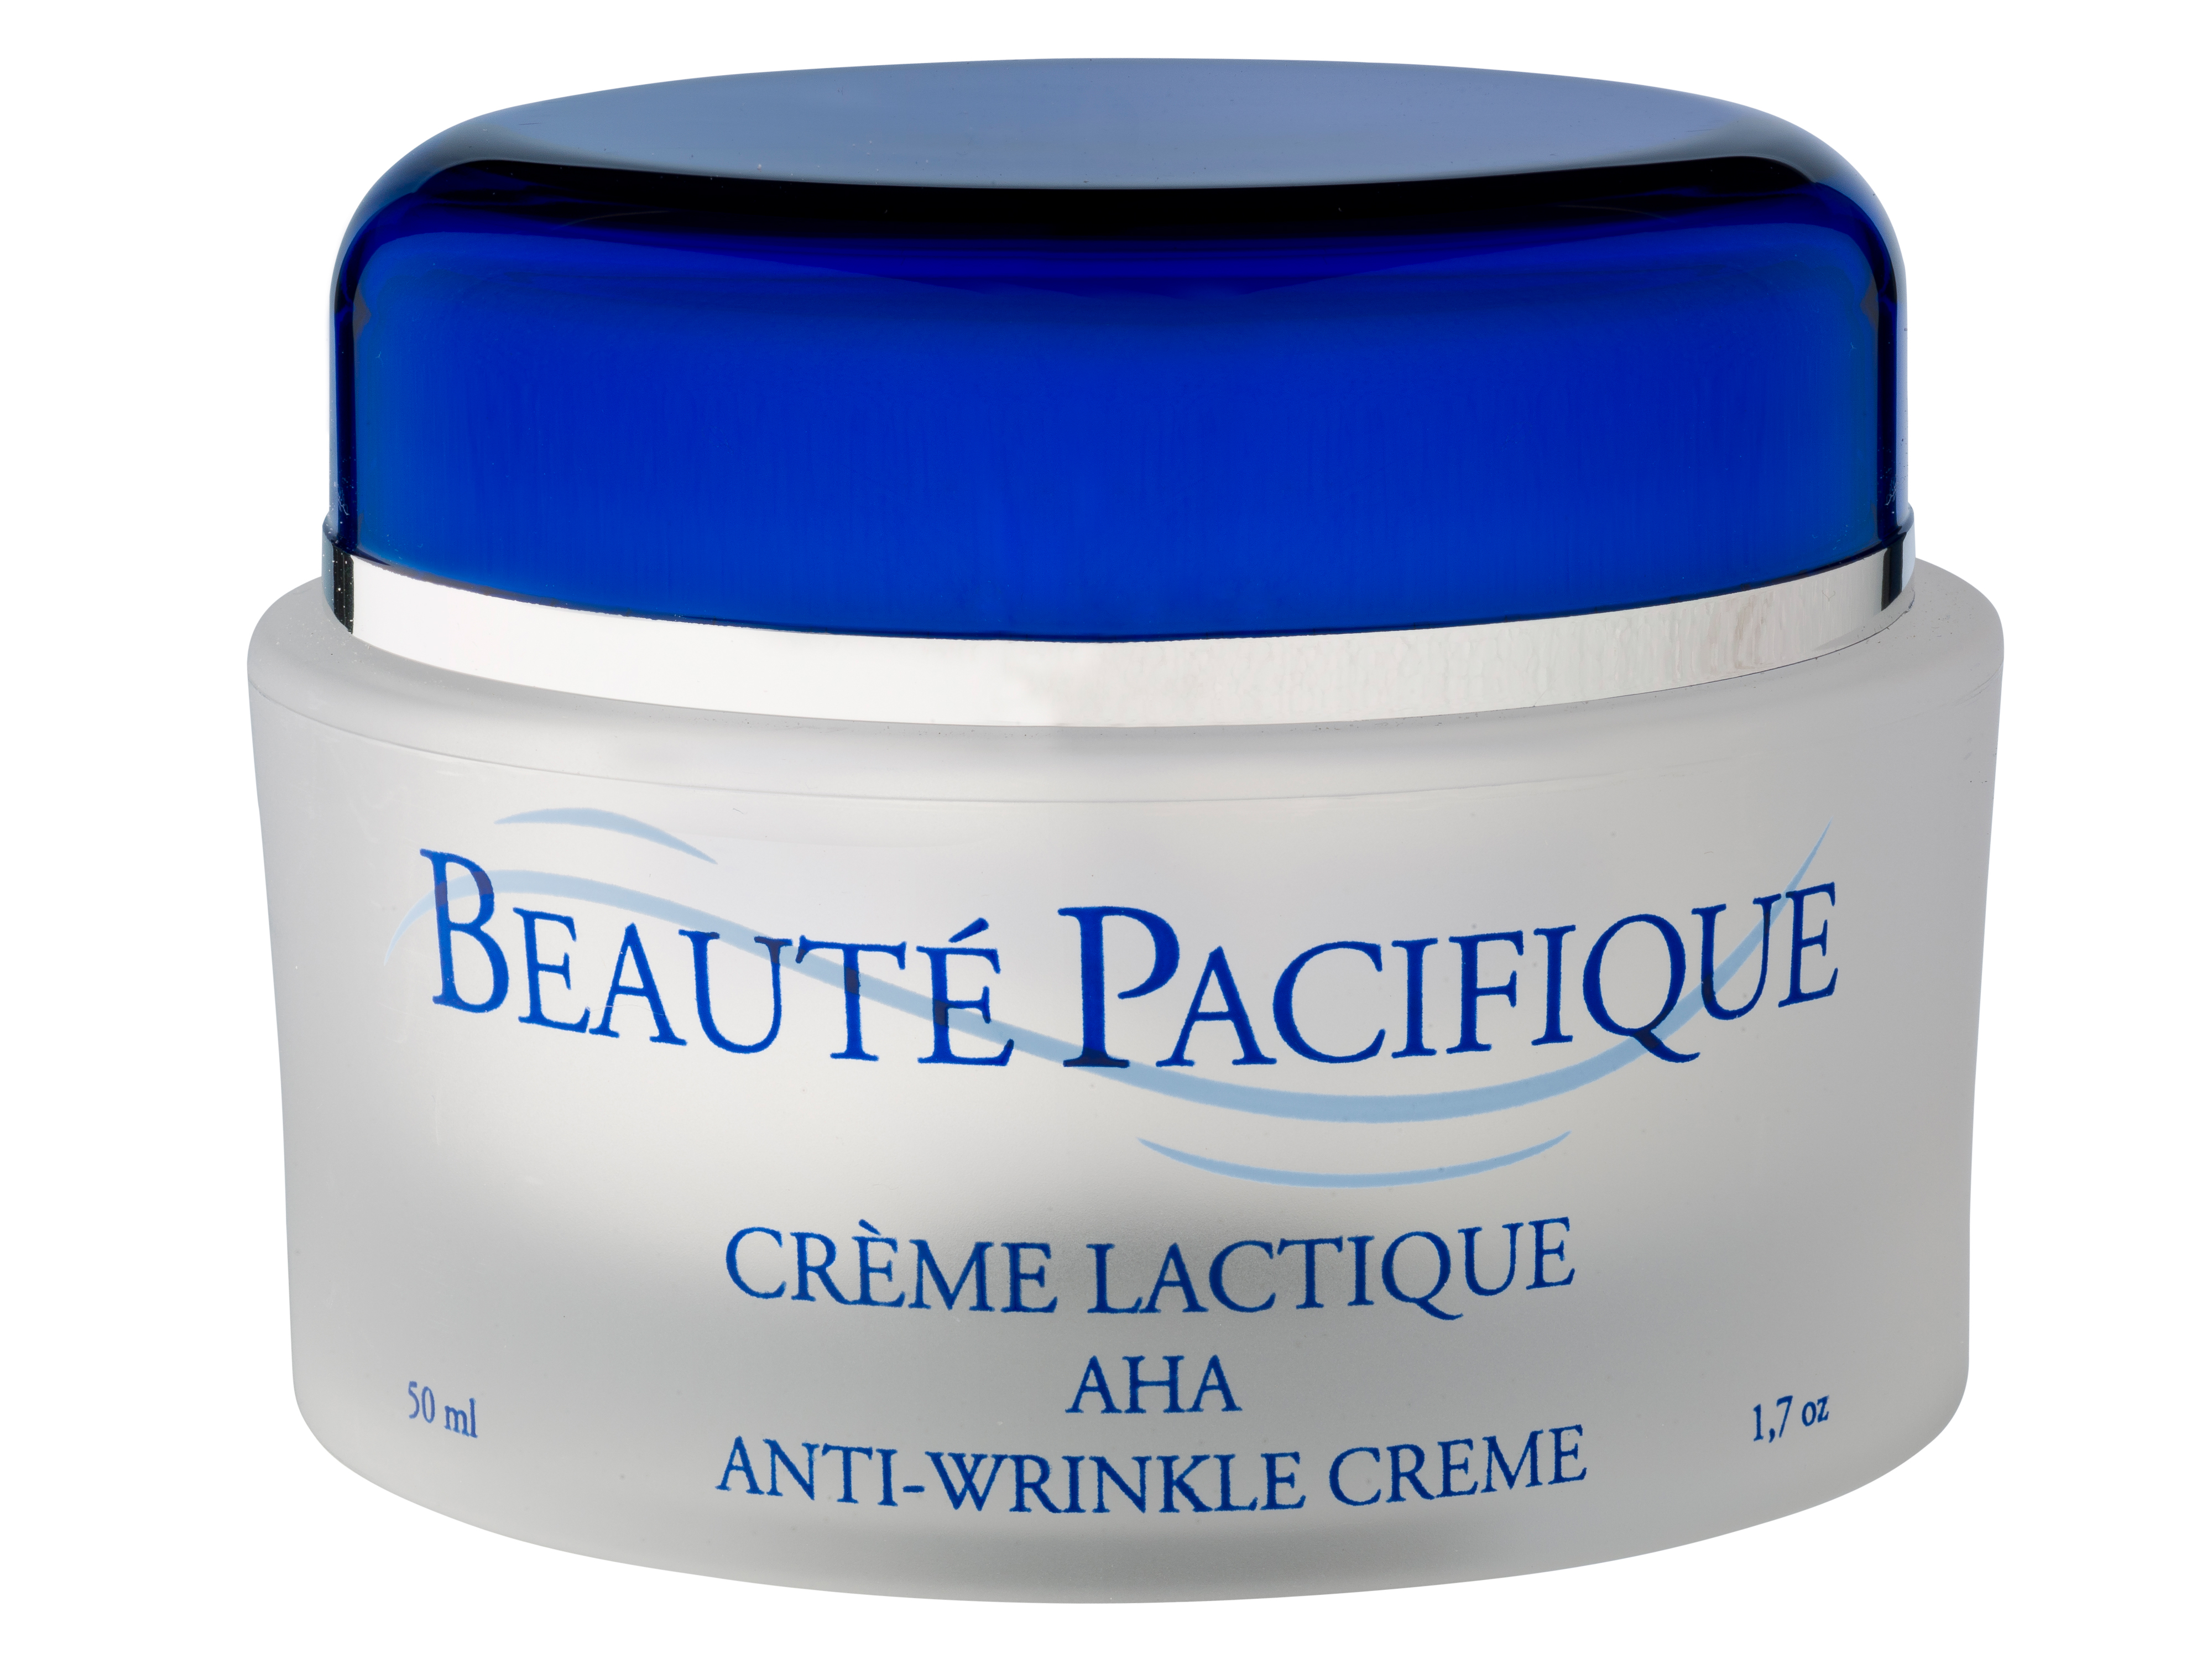 Beauté Pacifique AHA Anti-Wrinkle Creme, 50 ml